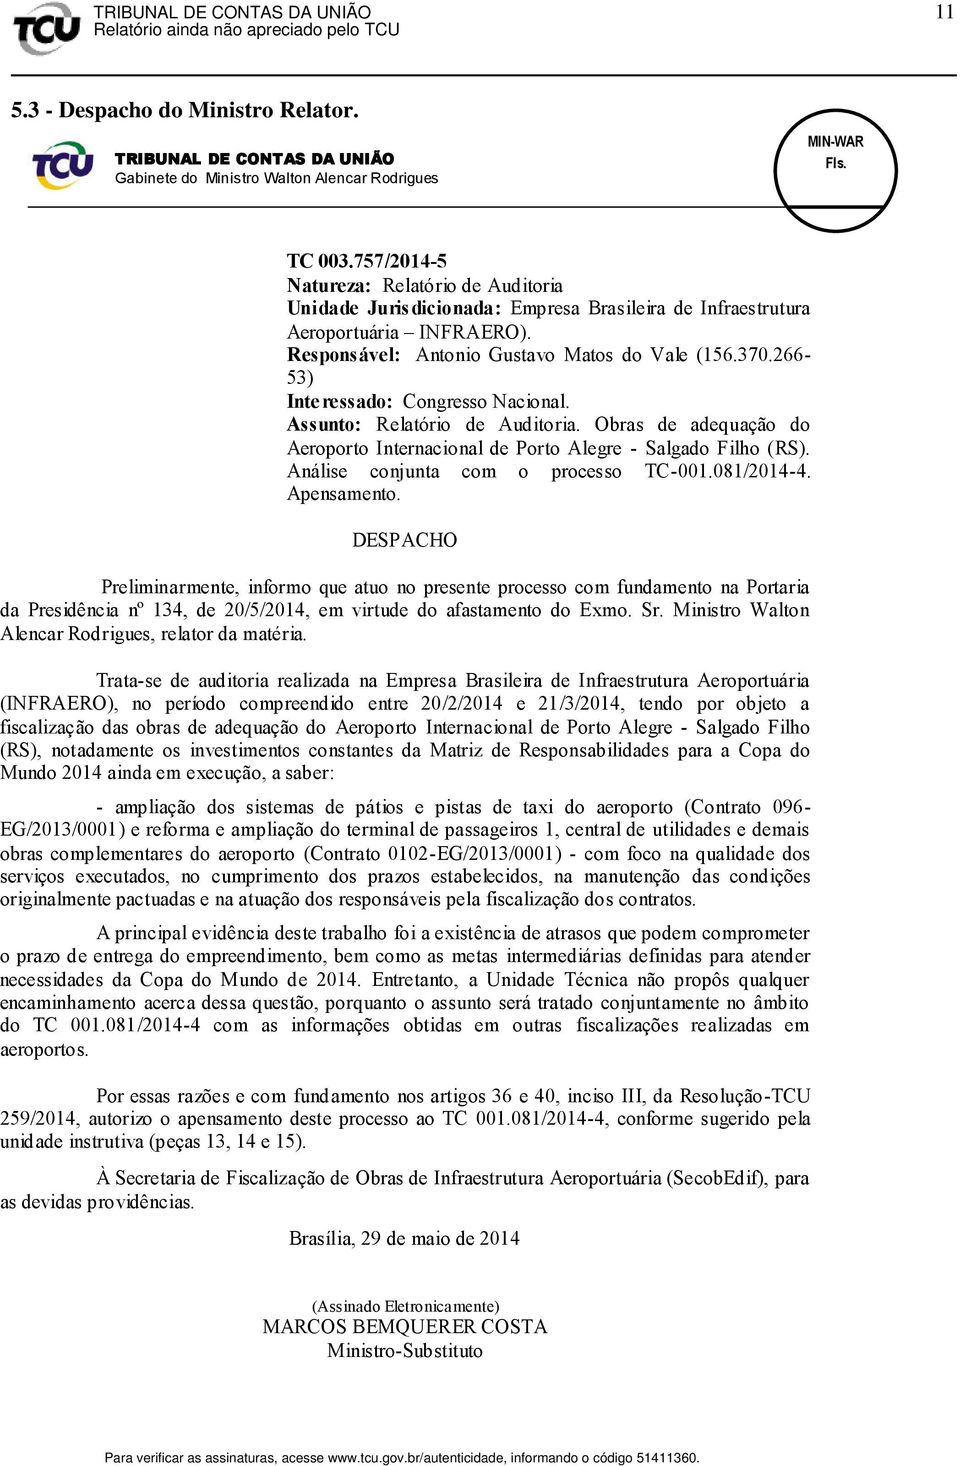 266-53) Interessado: Congresso Nacional. Assunto: Relatório de Auditoria. Obras de adequação do Aeroporto Internacional de Porto Alegre - Salgado Filho (RS). Análise conjunta com o processo TC-001.